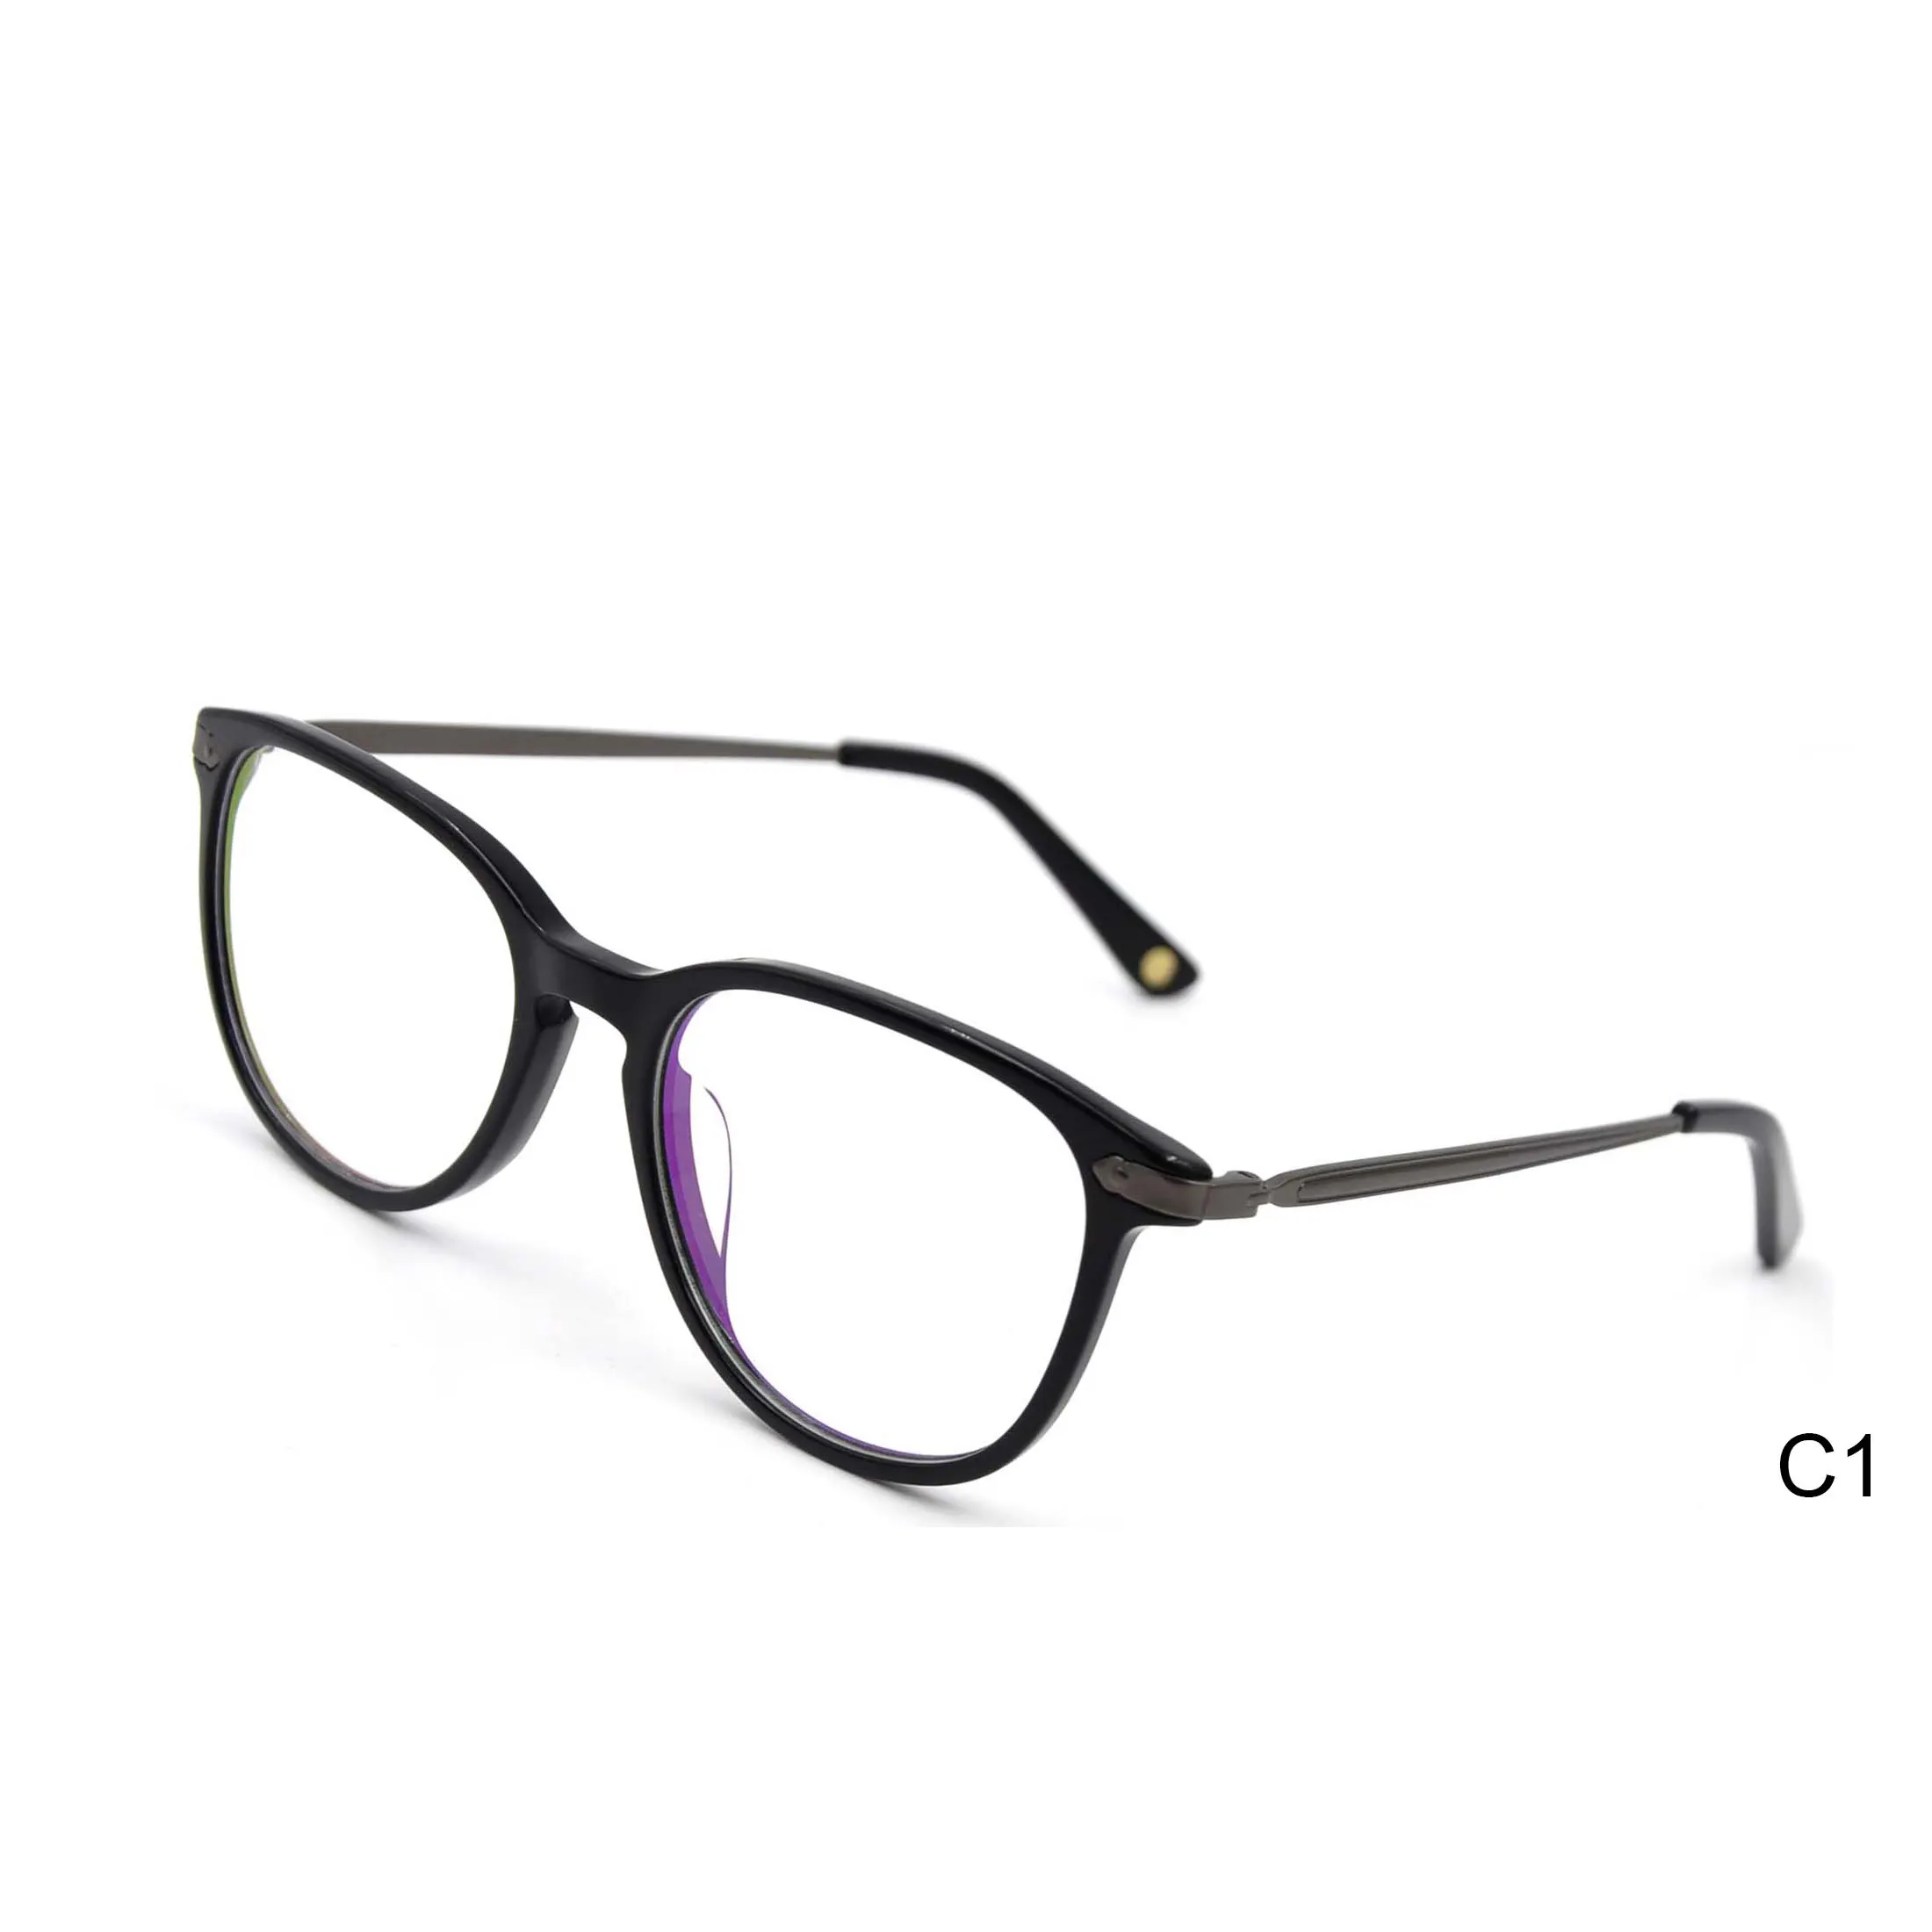 Alta calidad barato espectáculo fabricantes de moda óptica gafas CE hombres gafas de acetato marcos cuadrados de gafas